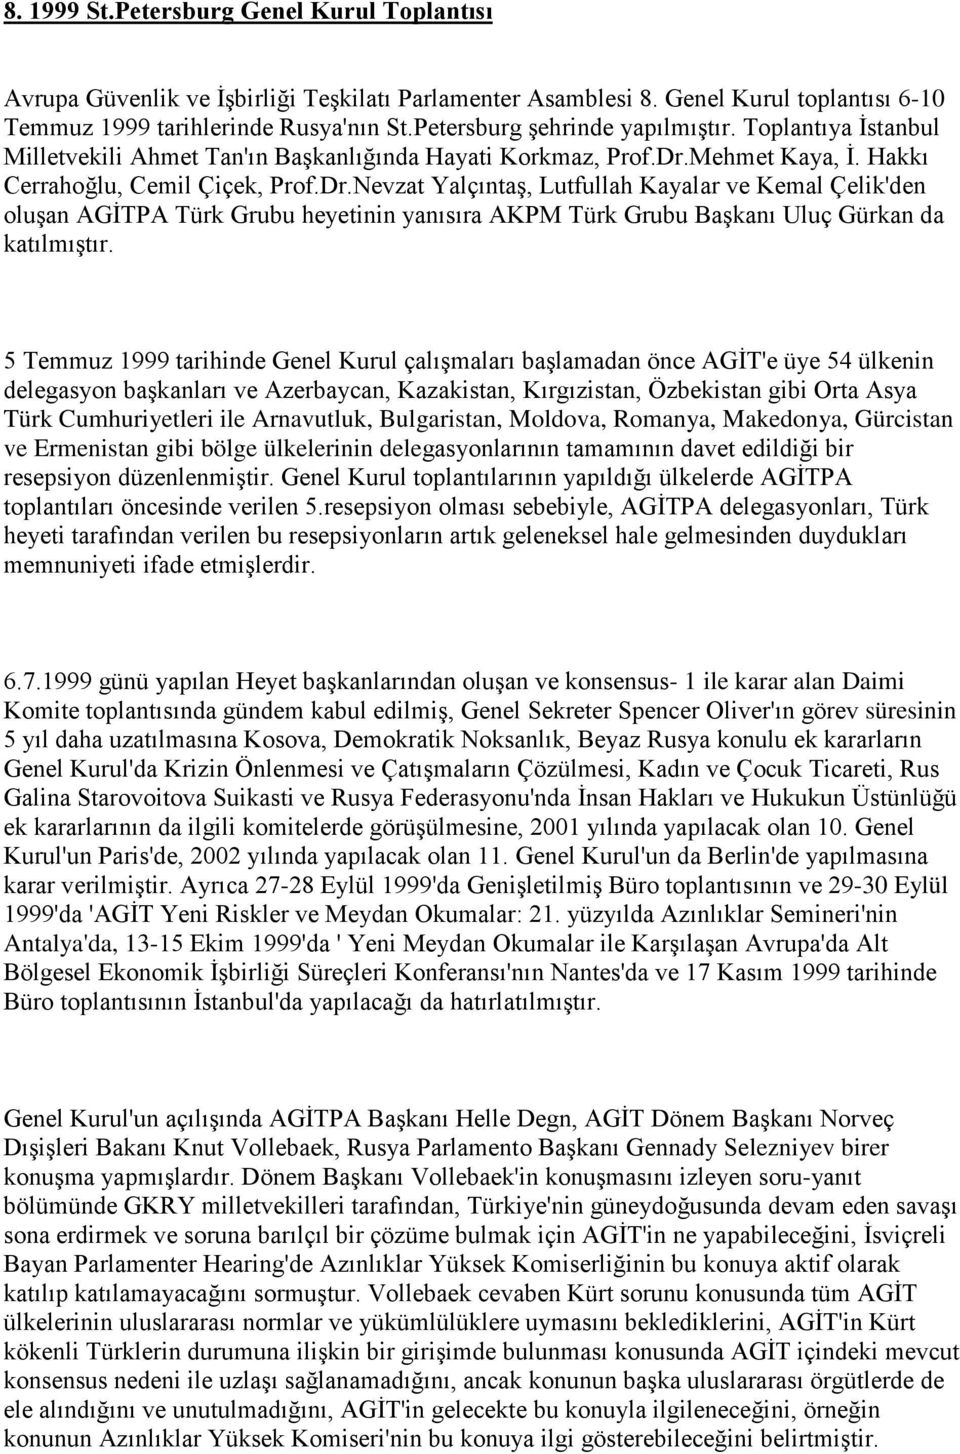 Mehmet Kaya, İ. Hakkı Cerrahoğlu, Cemil Çiçek, Prof.Dr.